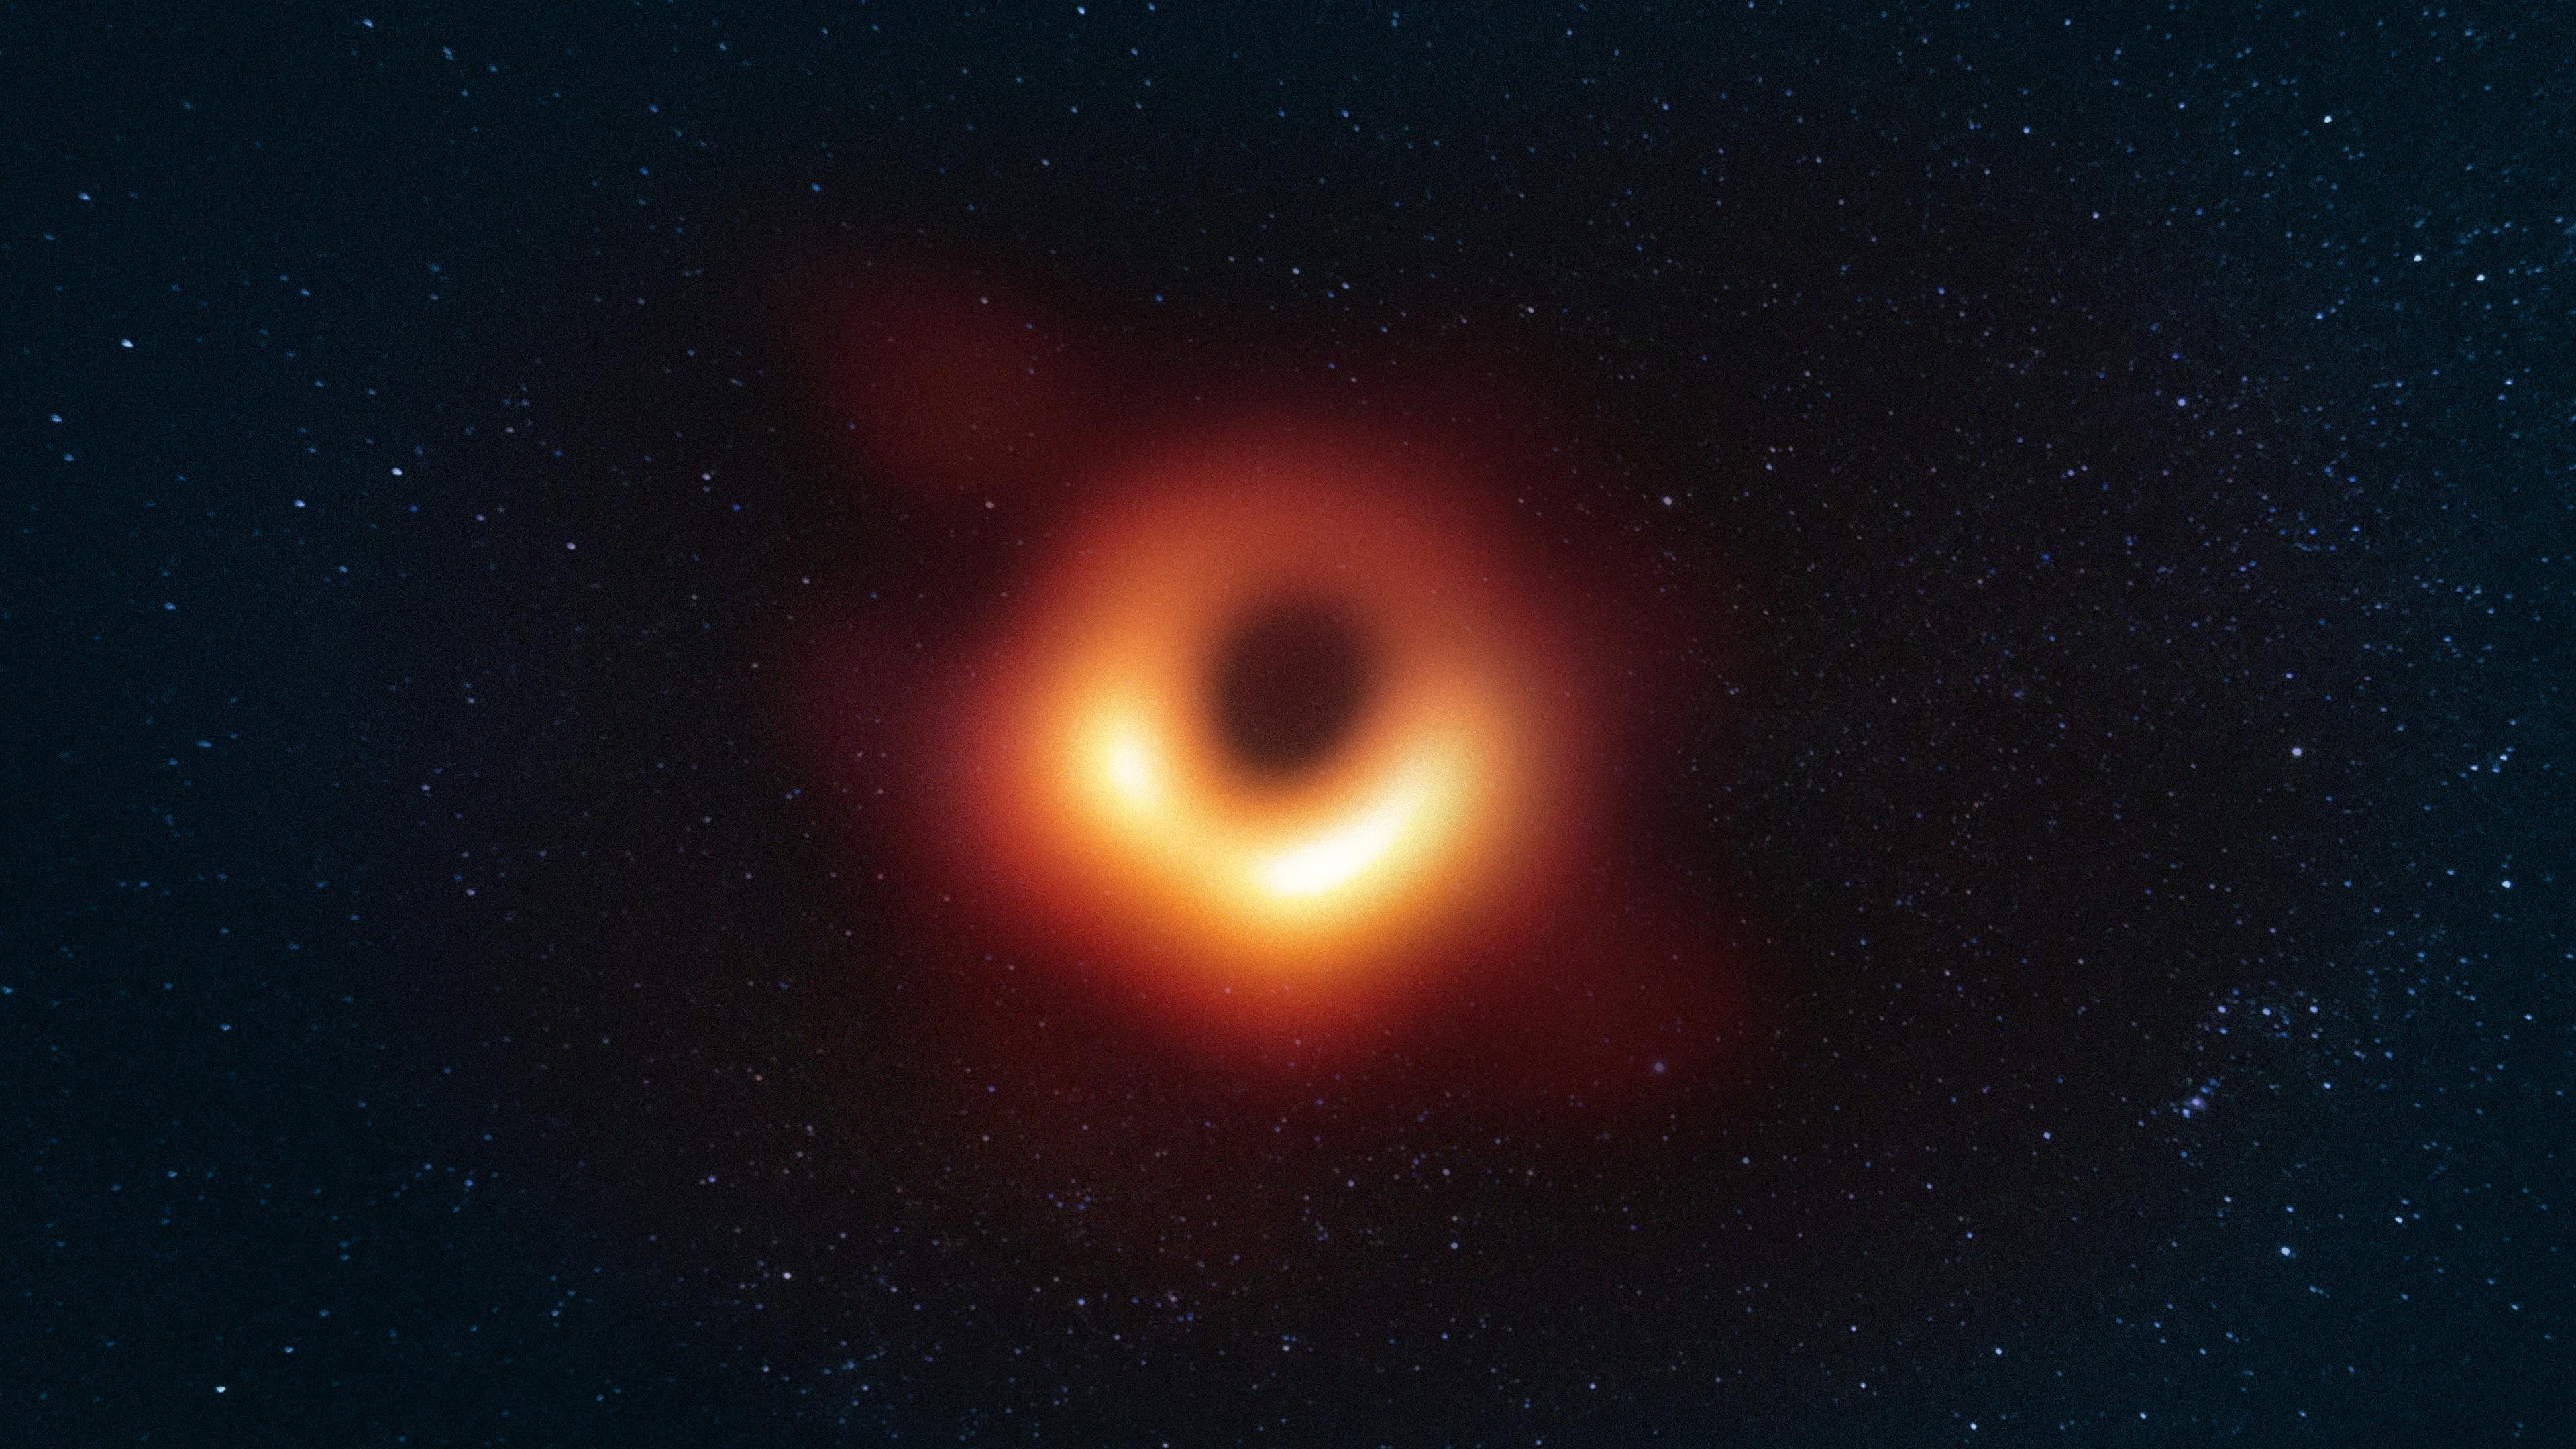 Black hole tome terraria фото 73